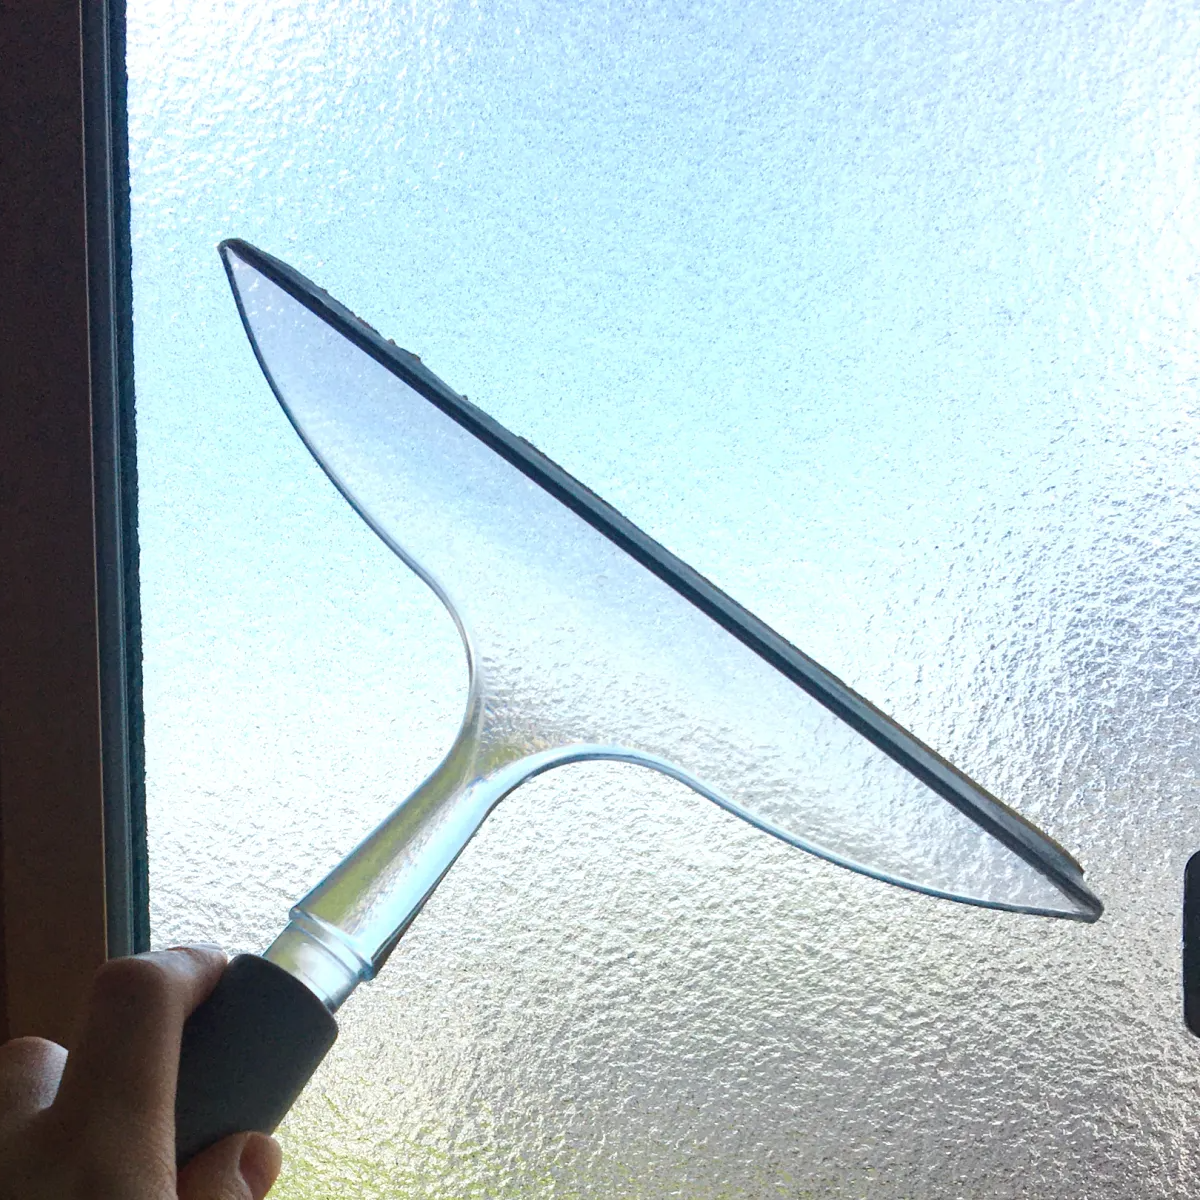  窓掃除につかえる「スクイージー」は縦に動かす方がいい？掃除のプロから学ぶ“スクイージーの使い方” 